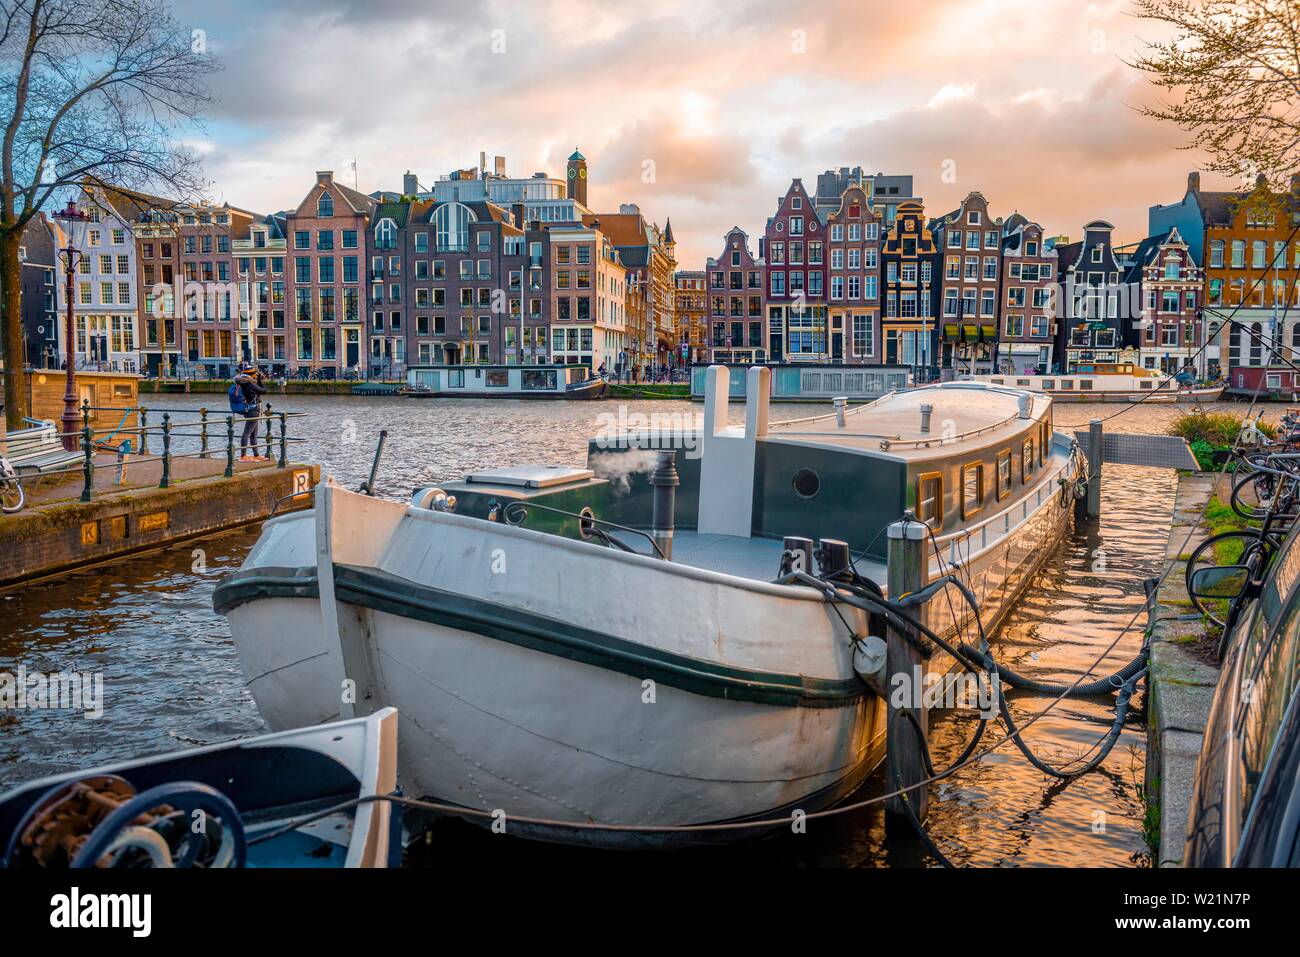 Vue sur l'Amstel dans la lumière du soir, canal avec voile et maisons historiques, Amsterdam, Hollande du Nord, Pays-Bas Banque D'Images